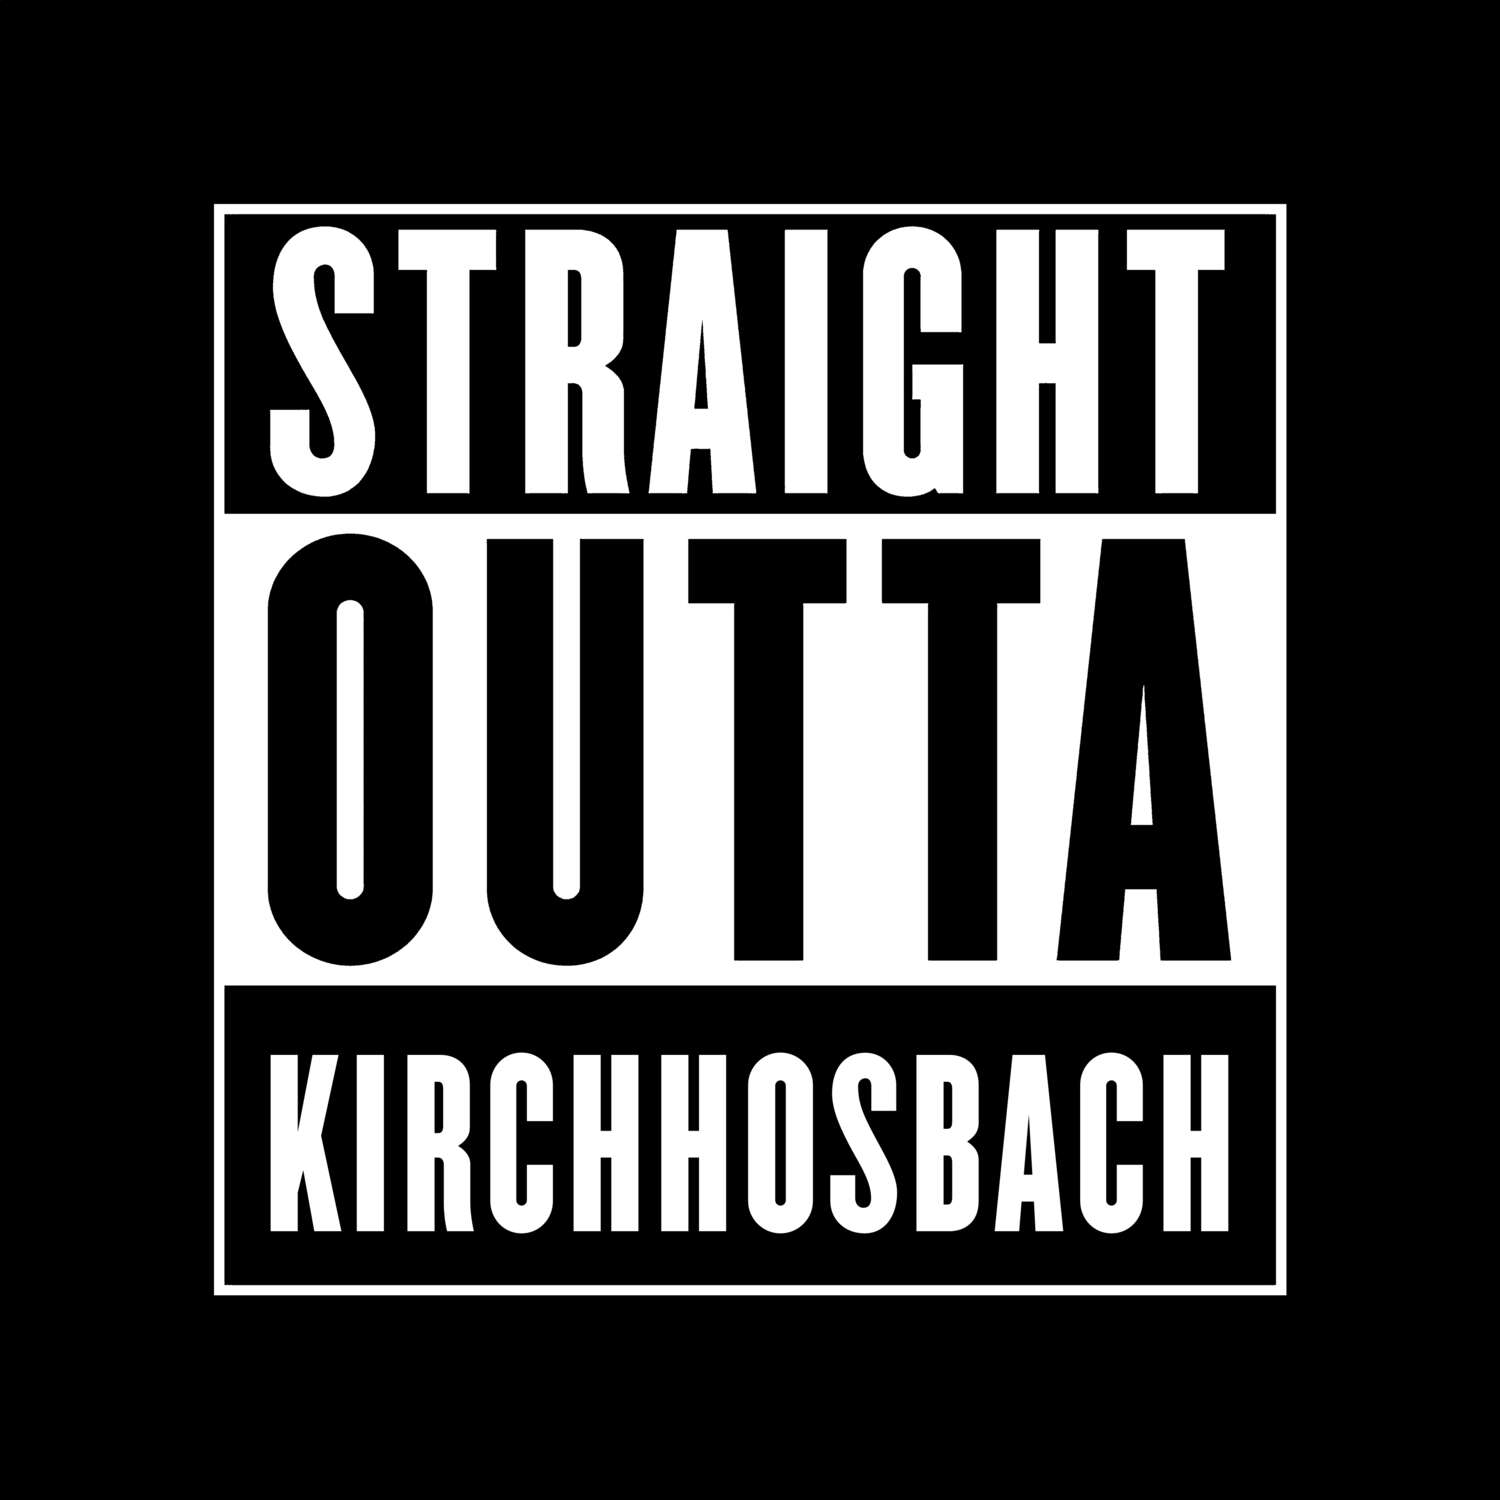 Kirchhosbach T-Shirt »Straight Outta«